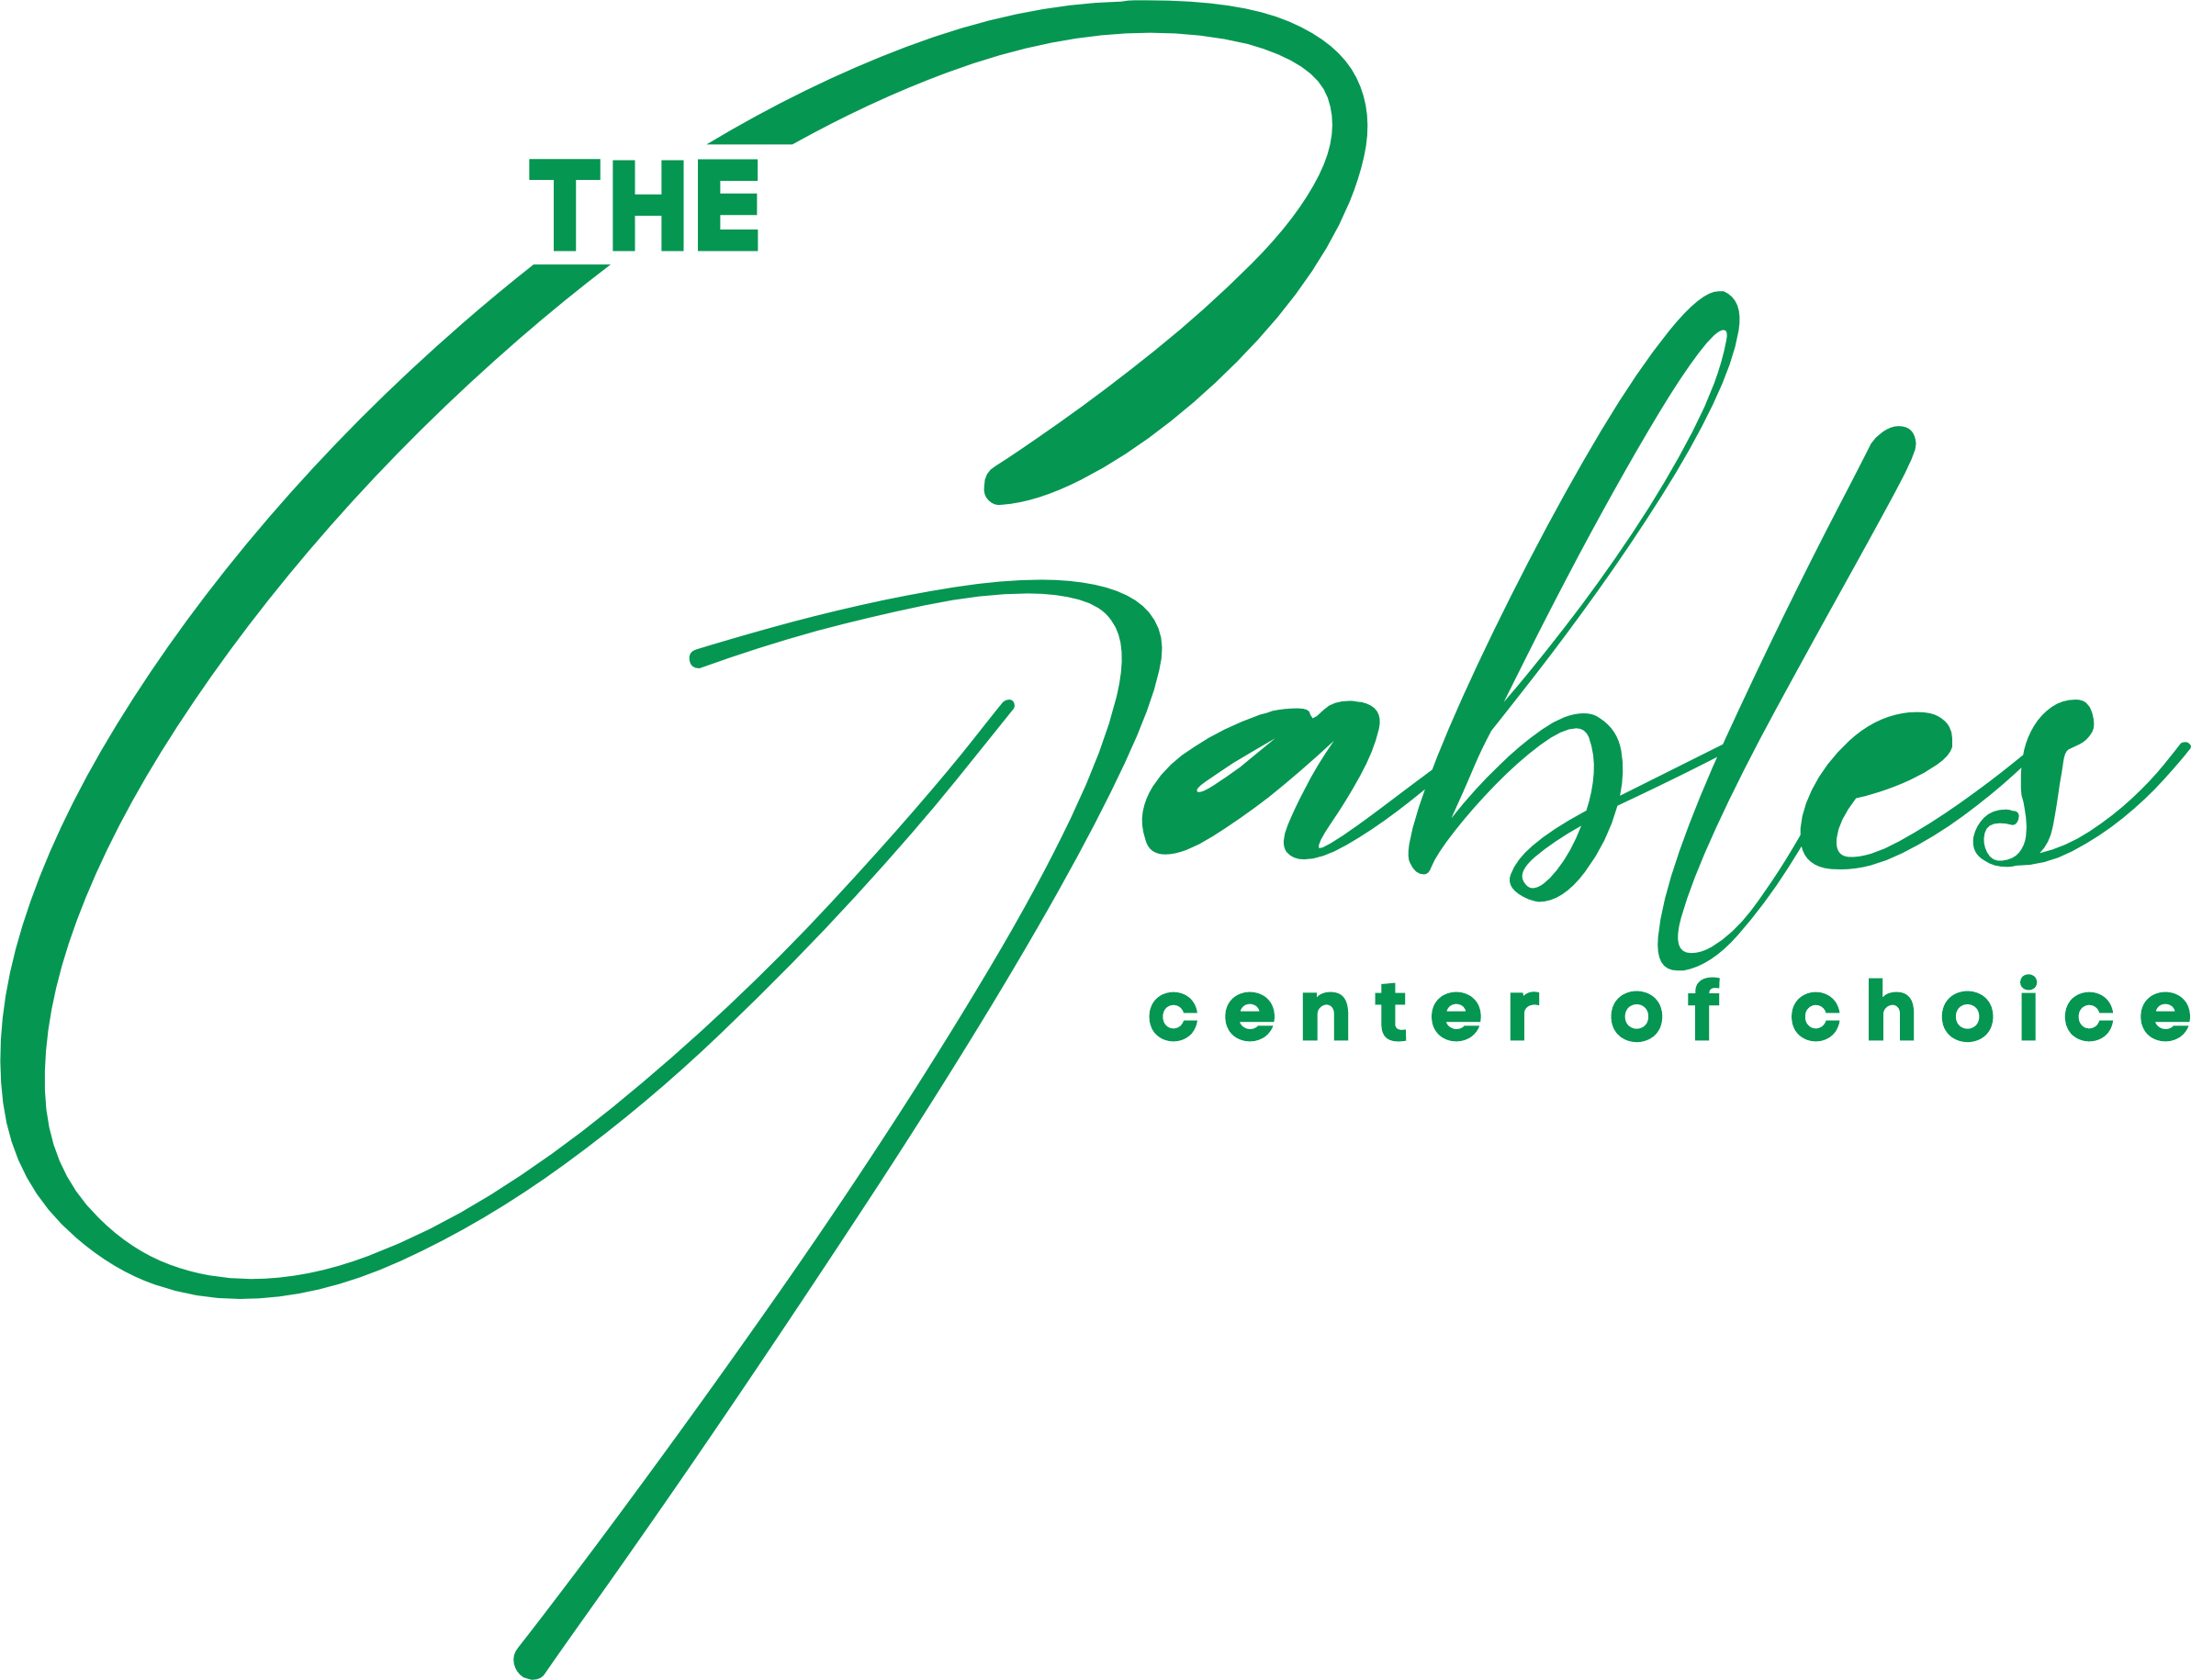 The Gables Logo